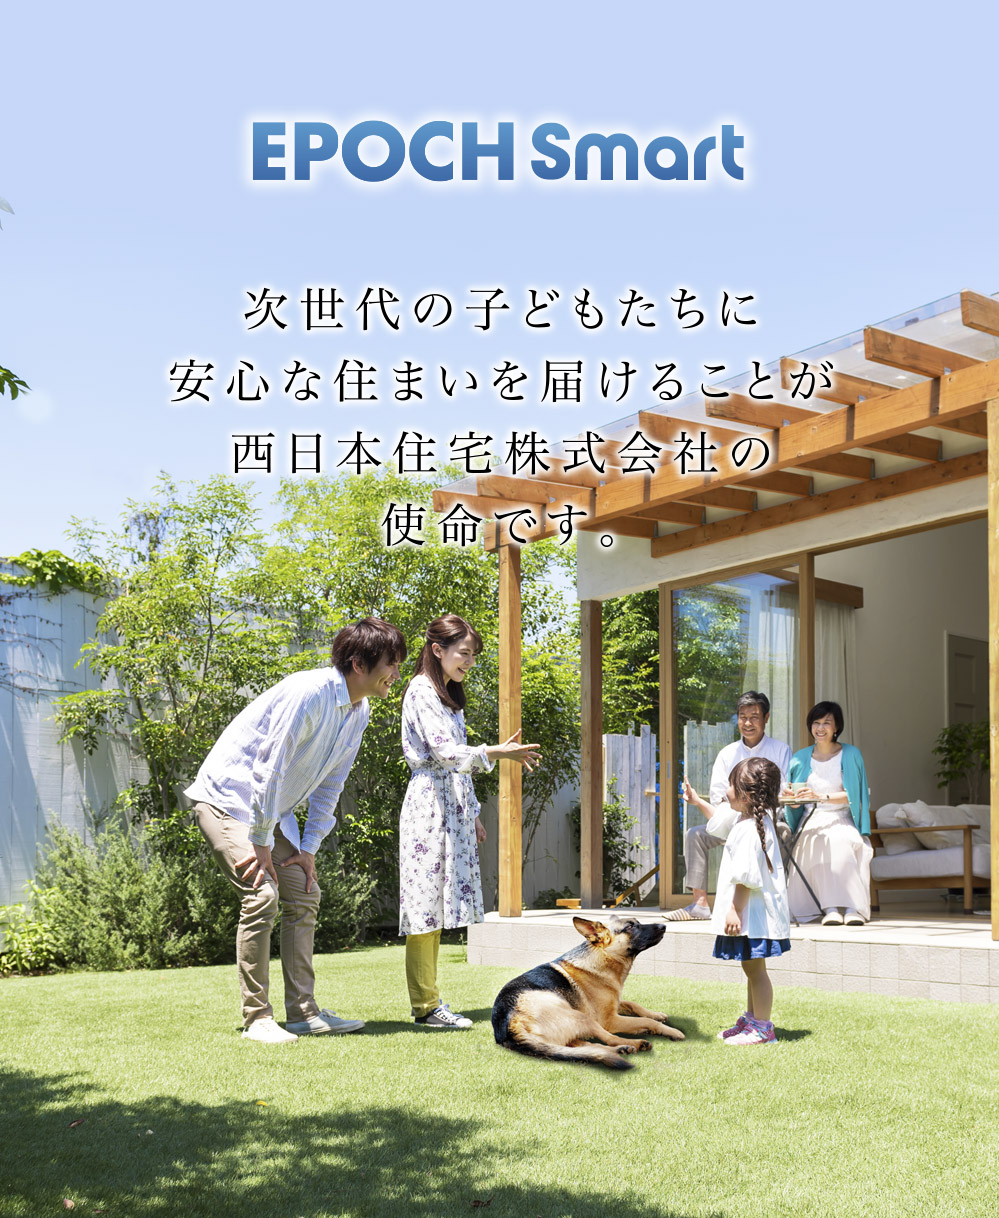 EPOCH Smart